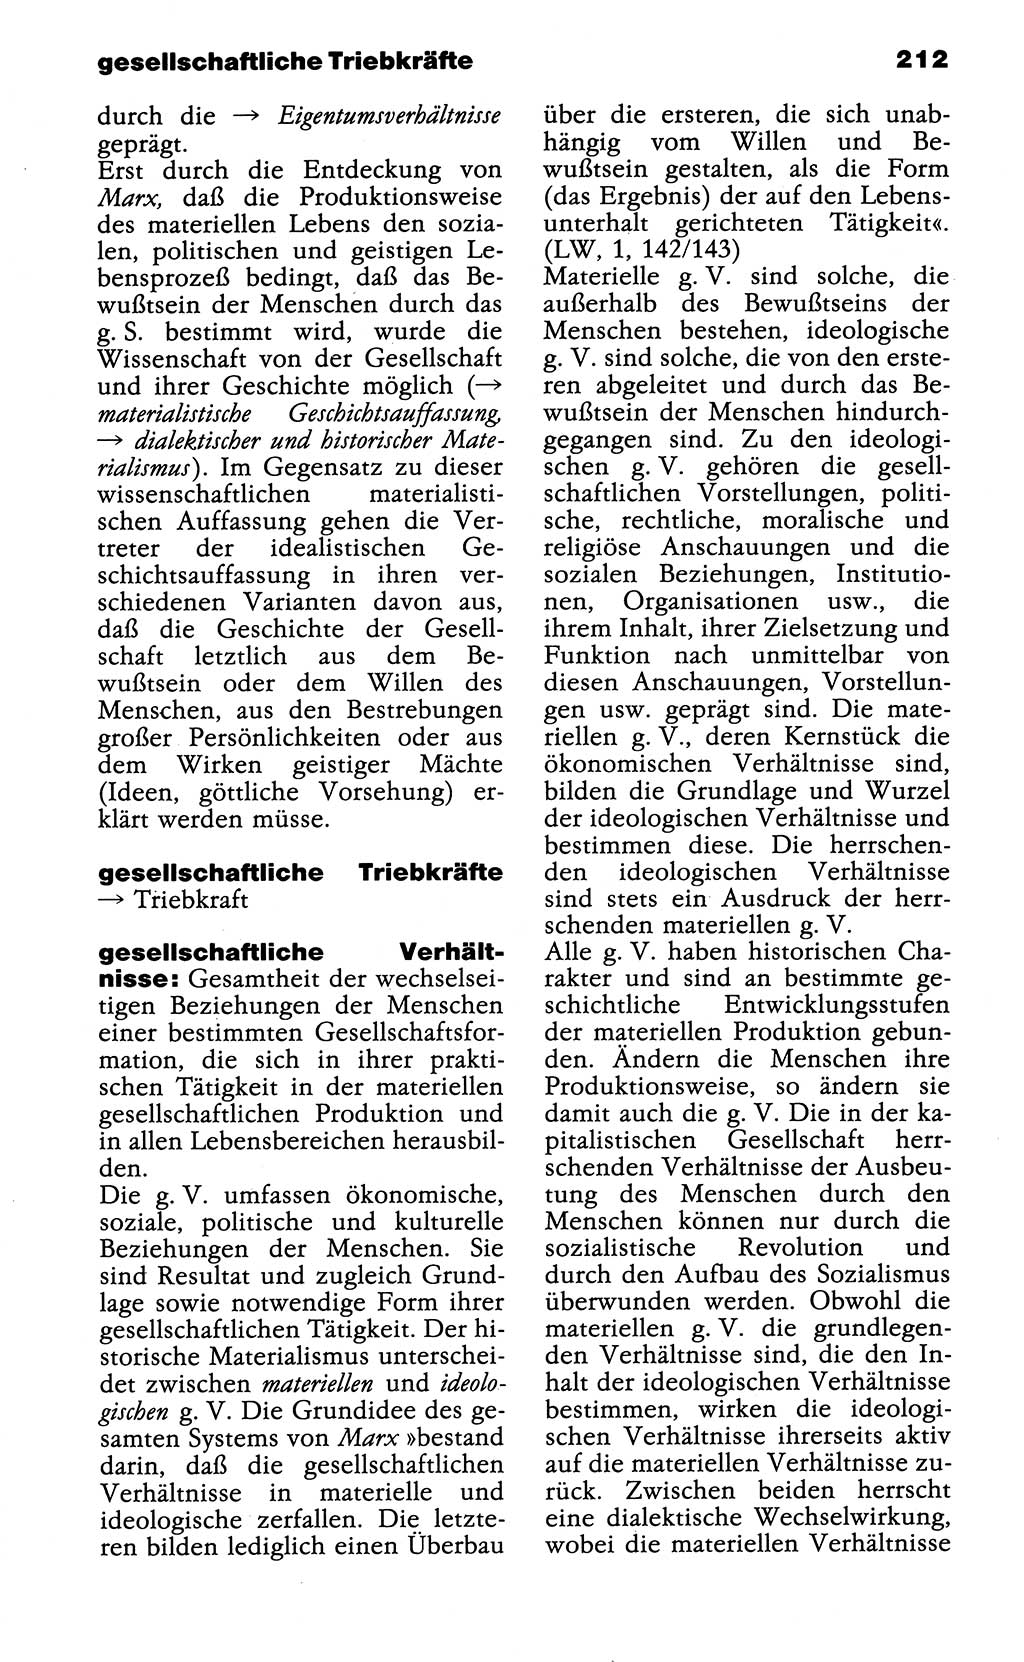 Wörterbuch der marxistisch-leninistischen Philosophie [Deutsche Demokratische Republik (DDR)] 1985, Seite 212 (Wb. ML Phil. DDR 1985, S. 212)